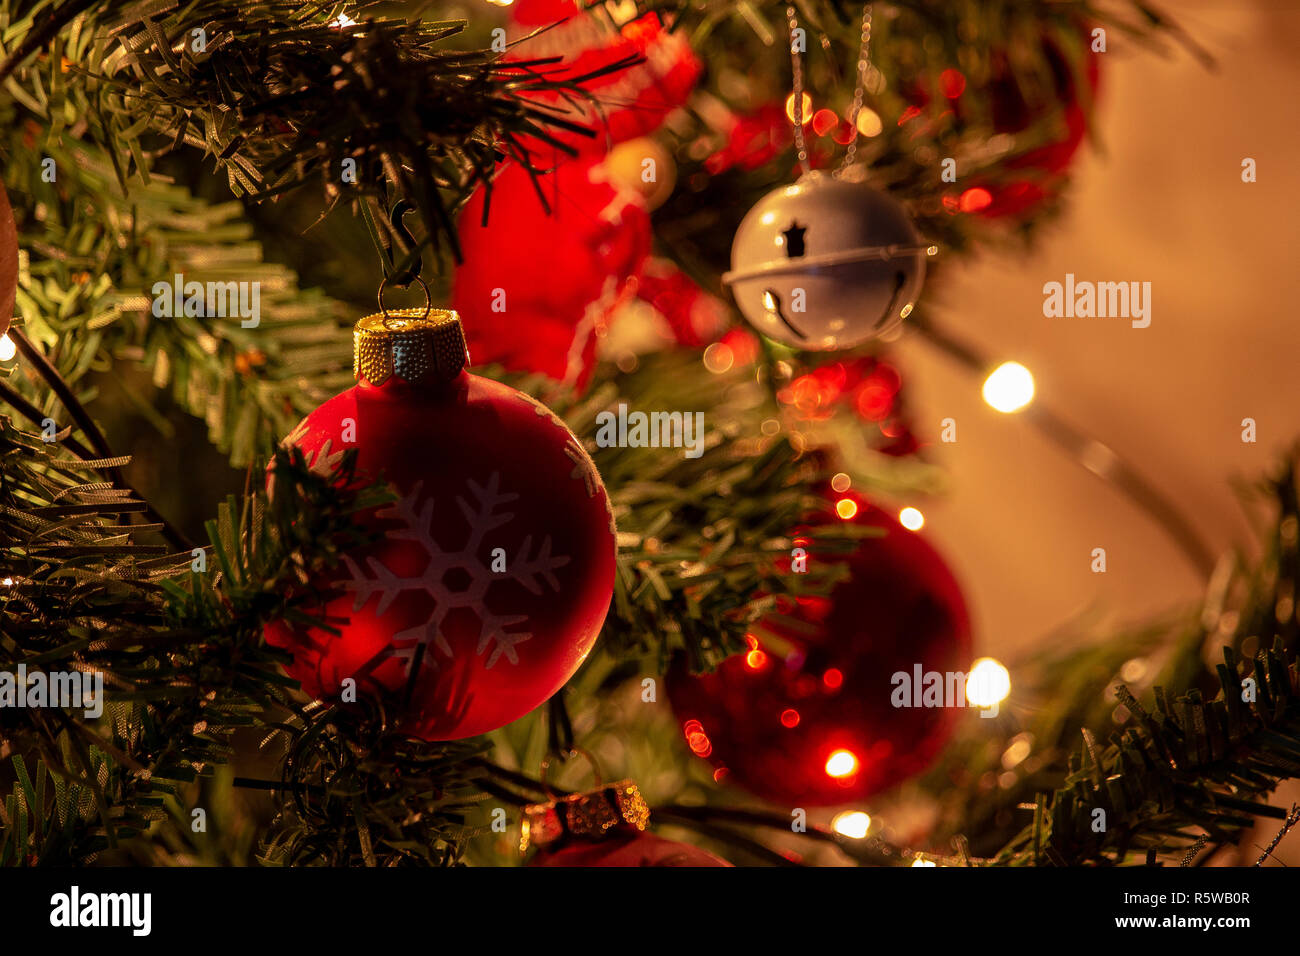 Weihnachtsschmuck, Dekorationen der Weihnachtsbäume, in einer Atmosphäre  der Lichter typisch für Weihnachten Stockfotografie - Alamy